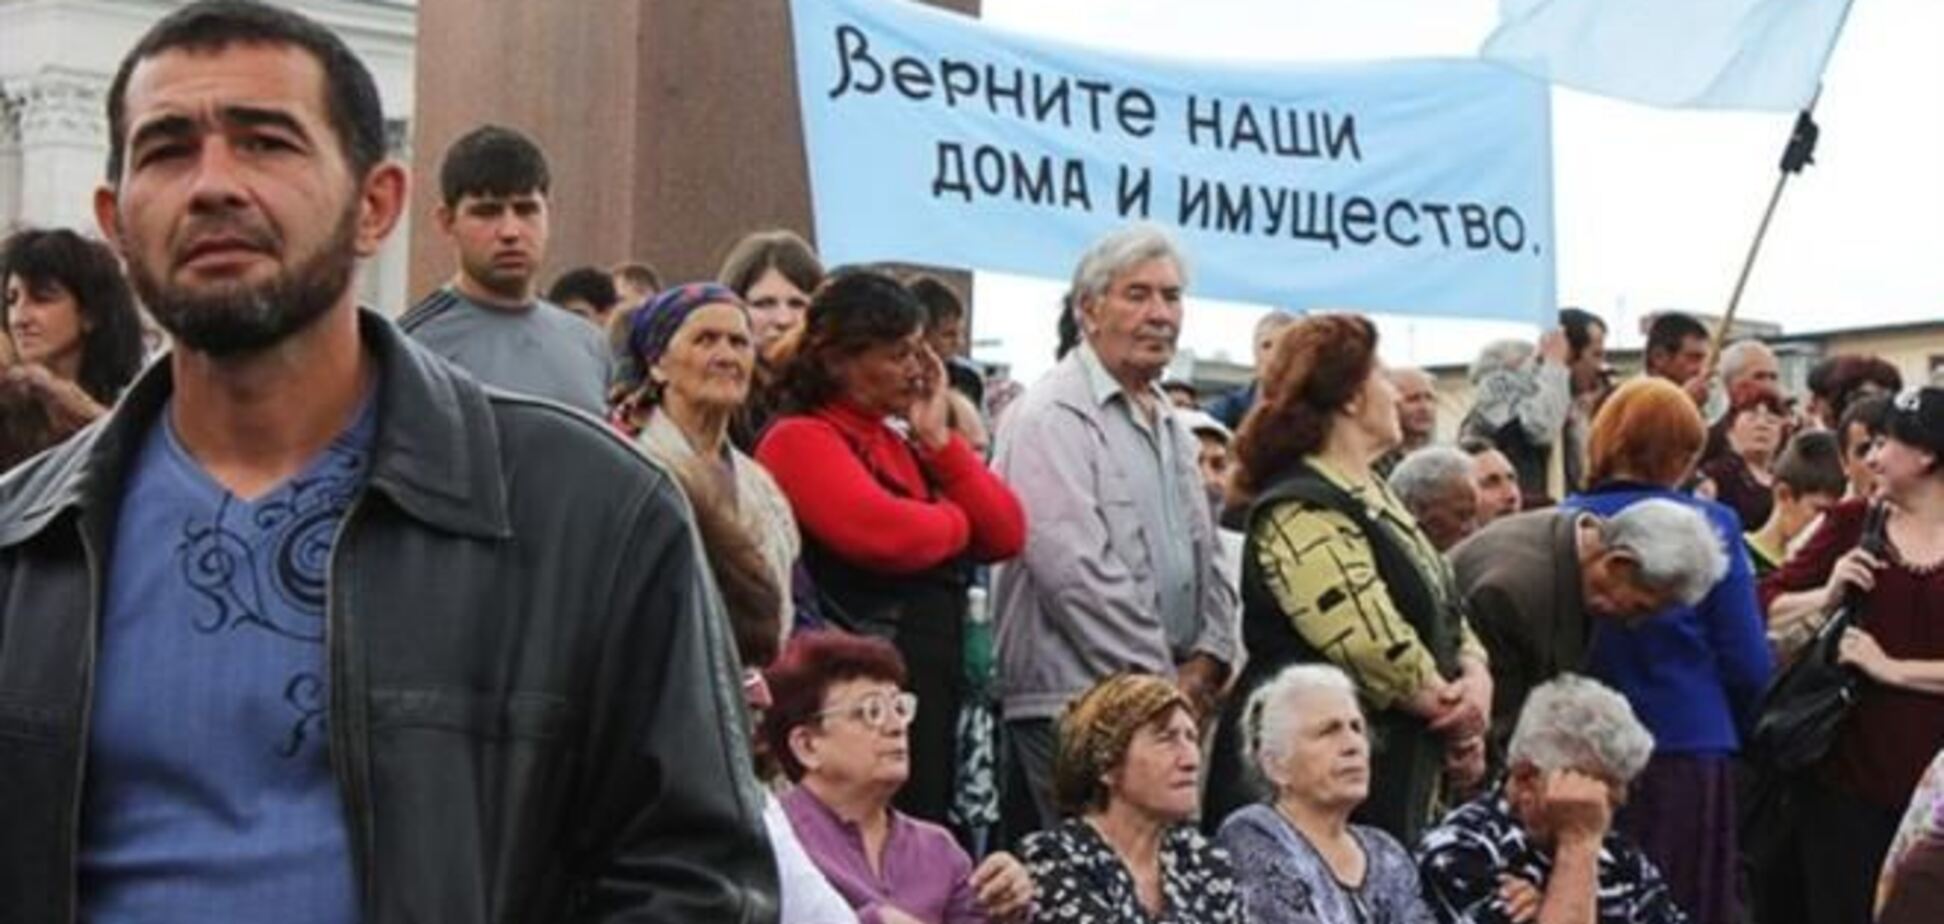 В Крыму растет шовинистический тонус - Джемилев